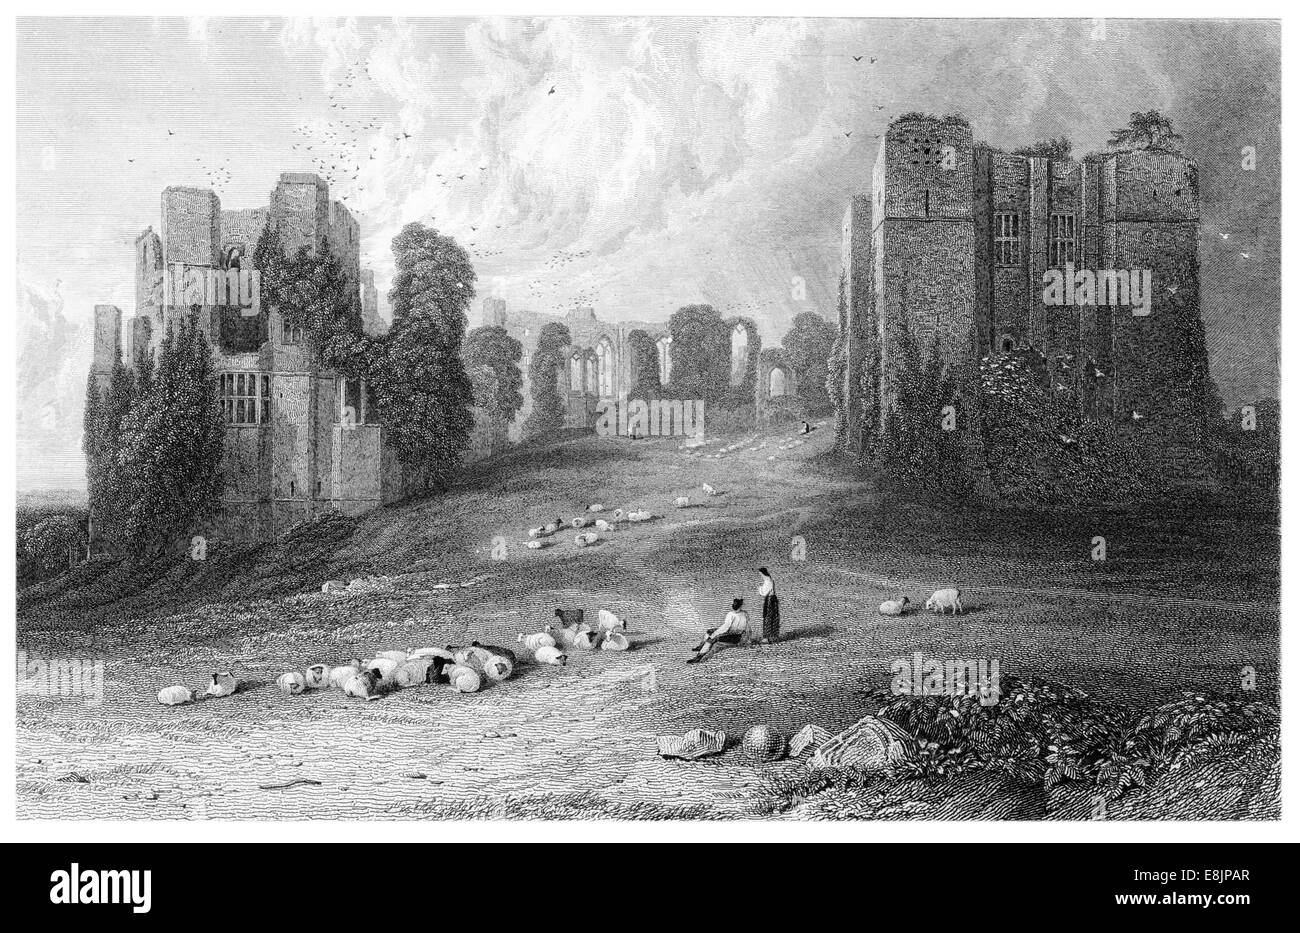 El Castillo de Kenilworth Warwickshire, Inglaterra circa 1880 Foto de stock